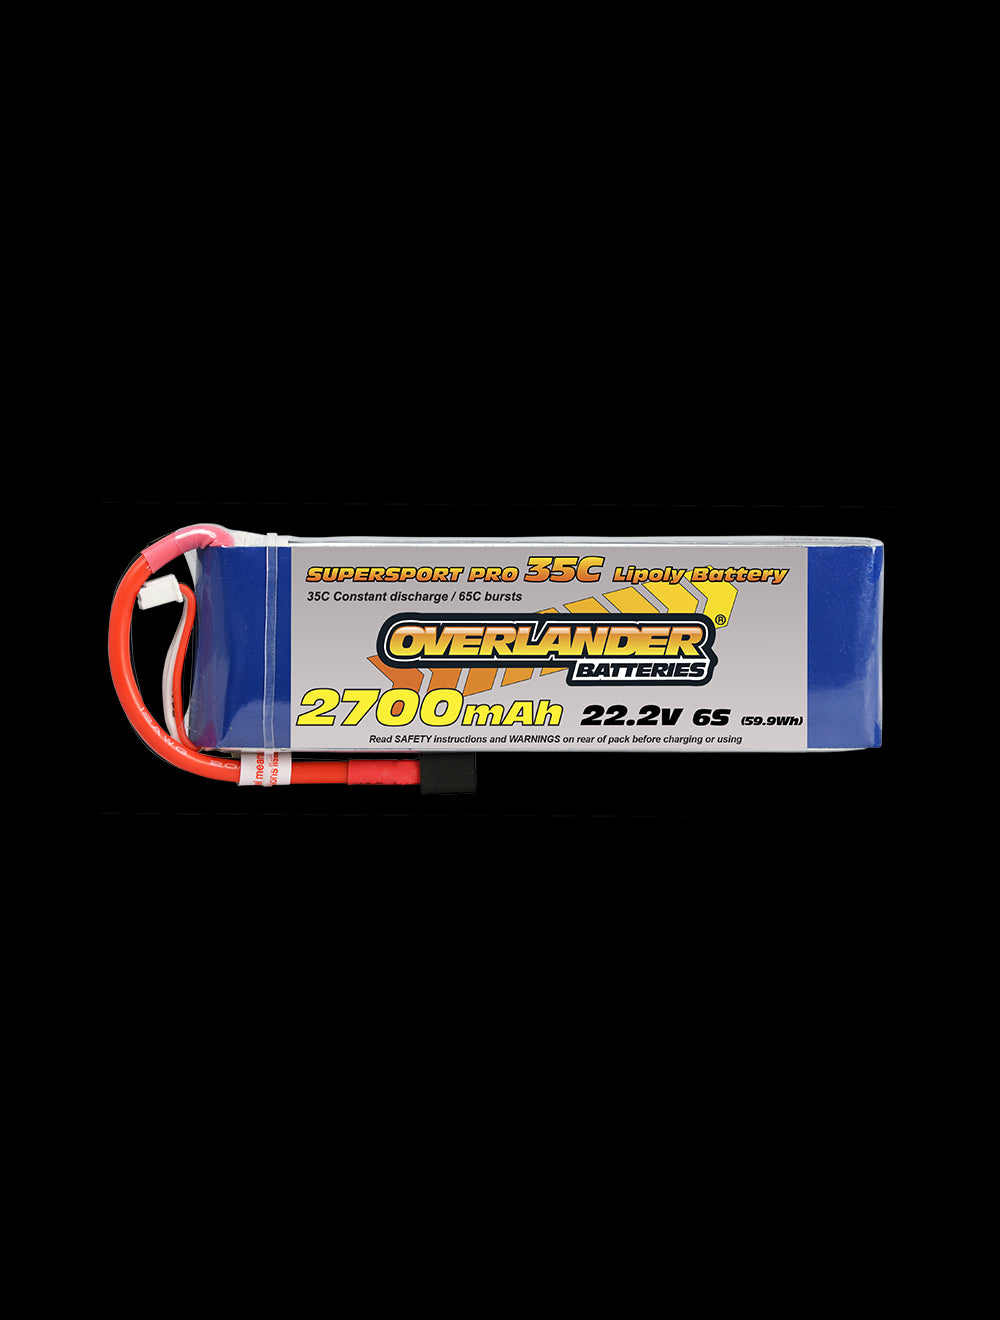 Overlander 2700mAh 22.2V 6S 35C Supersport Pro LiPo Battery - EC3 Connector 2482